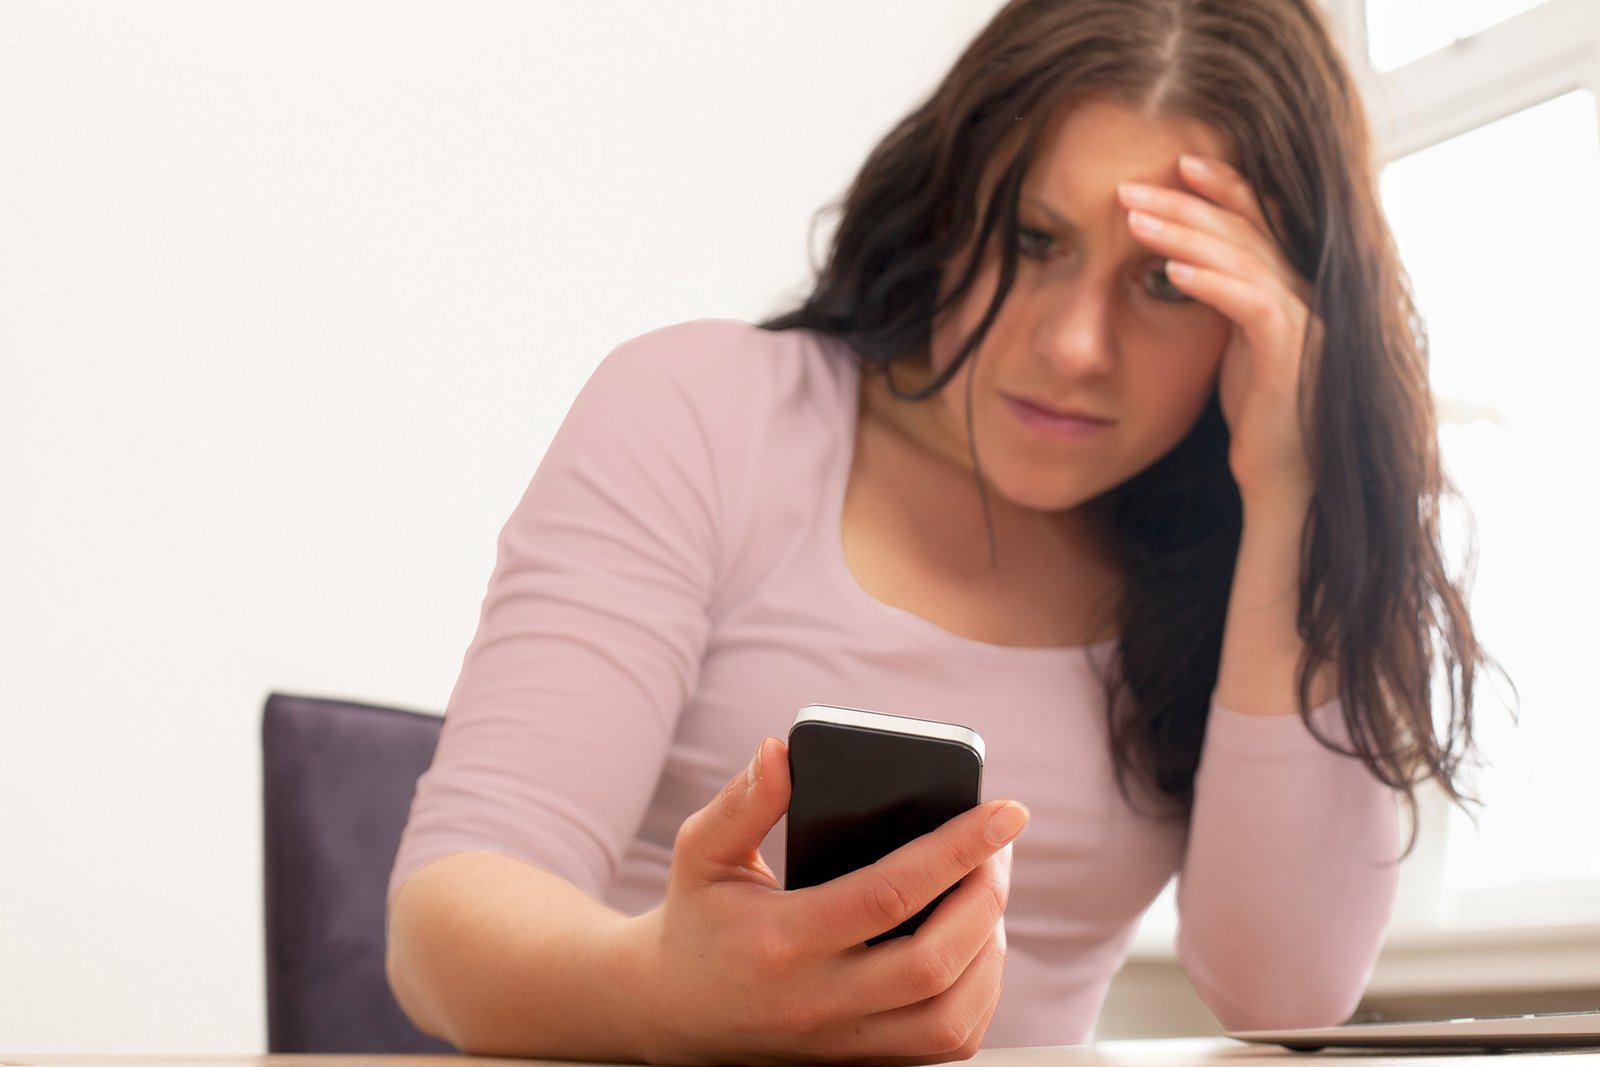 Uma mulher com expressão de preocupação olhando para a tela do celular